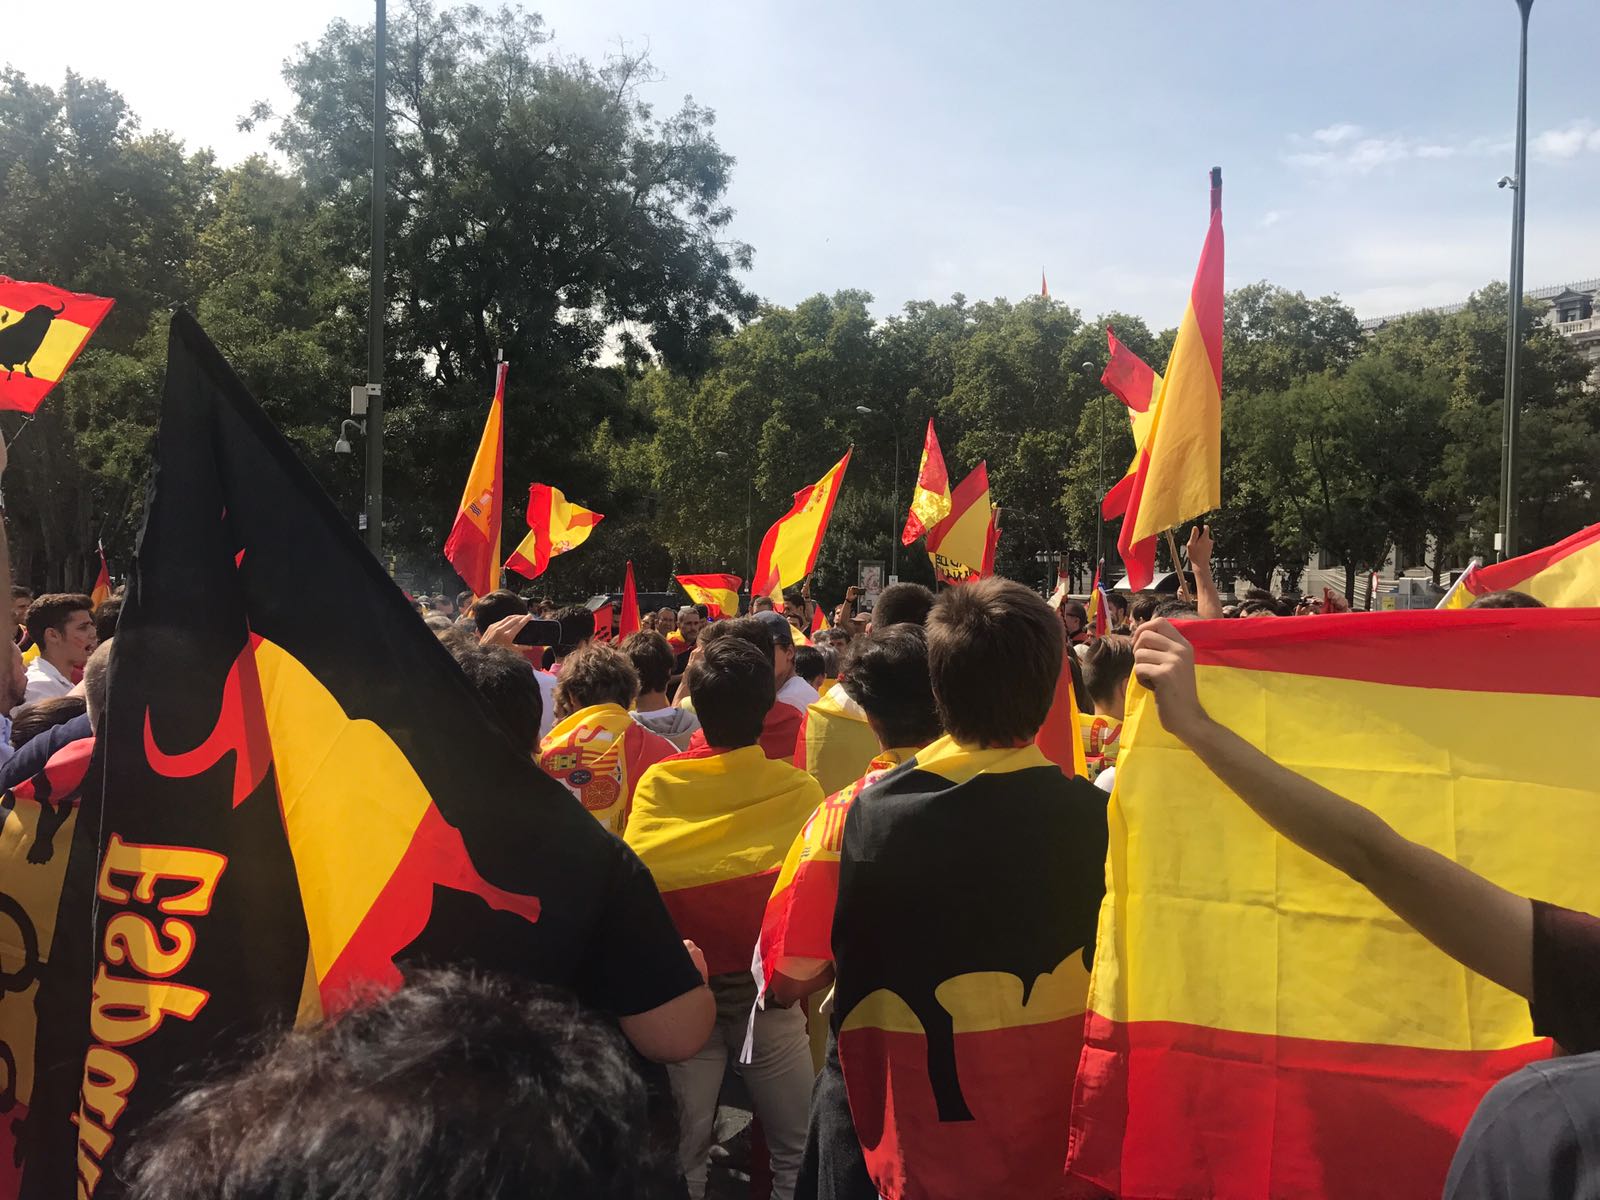 Convoquen ultres de Madrid a manifestar-se l’1-O davant Casanova